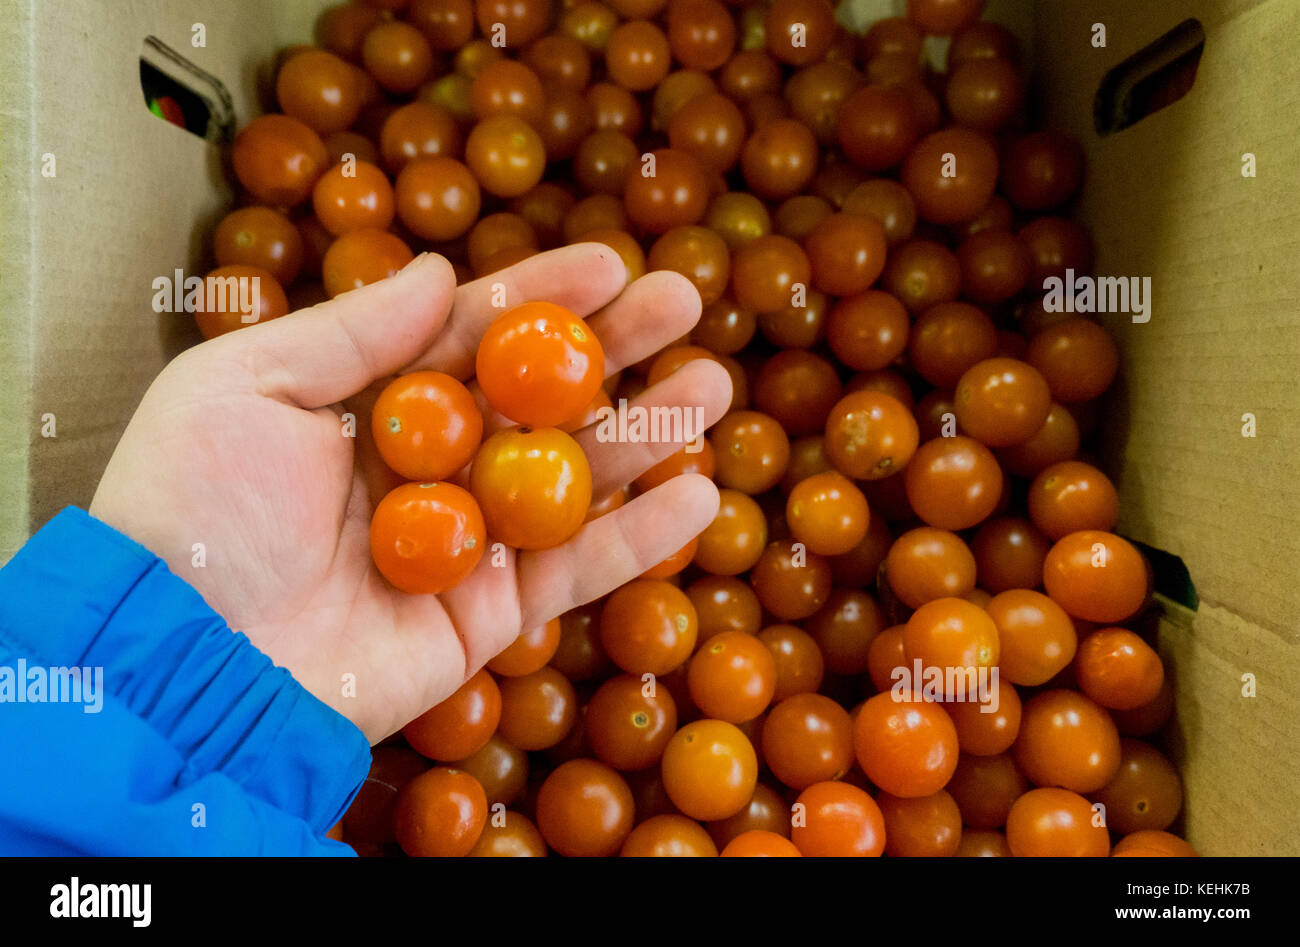 Mano sujetando los tomates Foto de stock